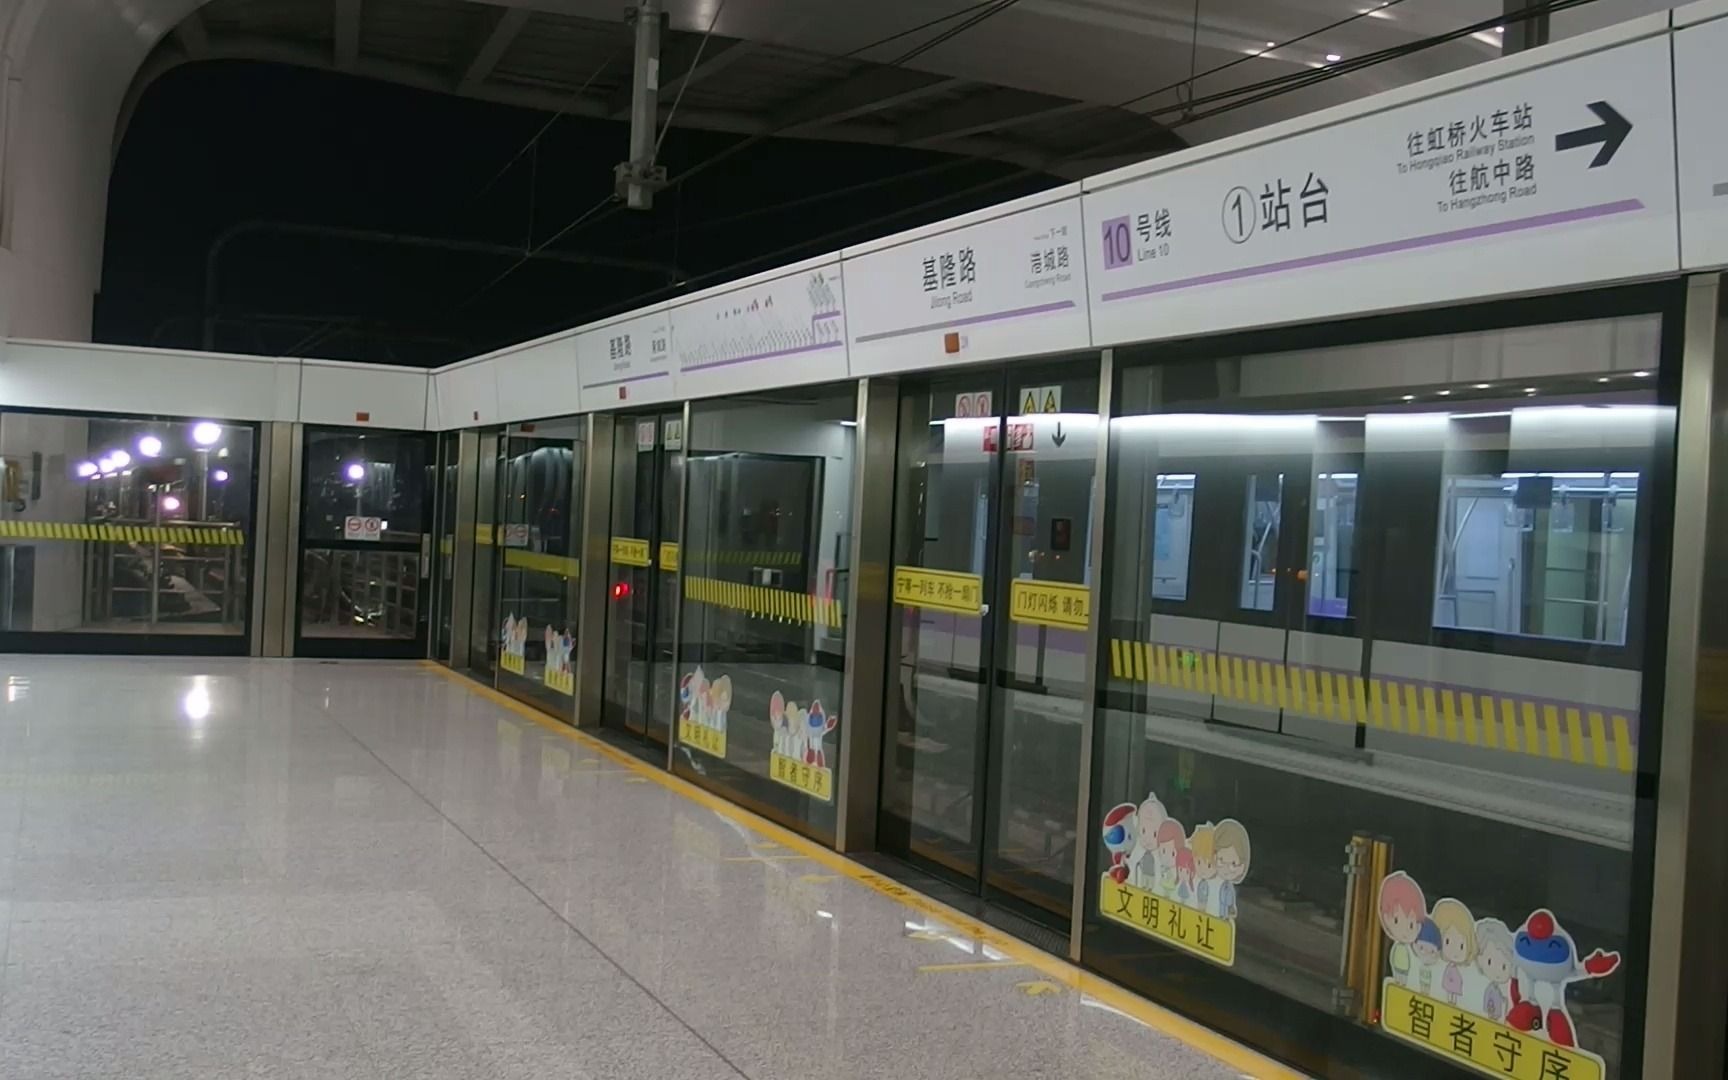 上海地铁10号线基隆路站后快速折返内含徐州地铁广播彩蛋